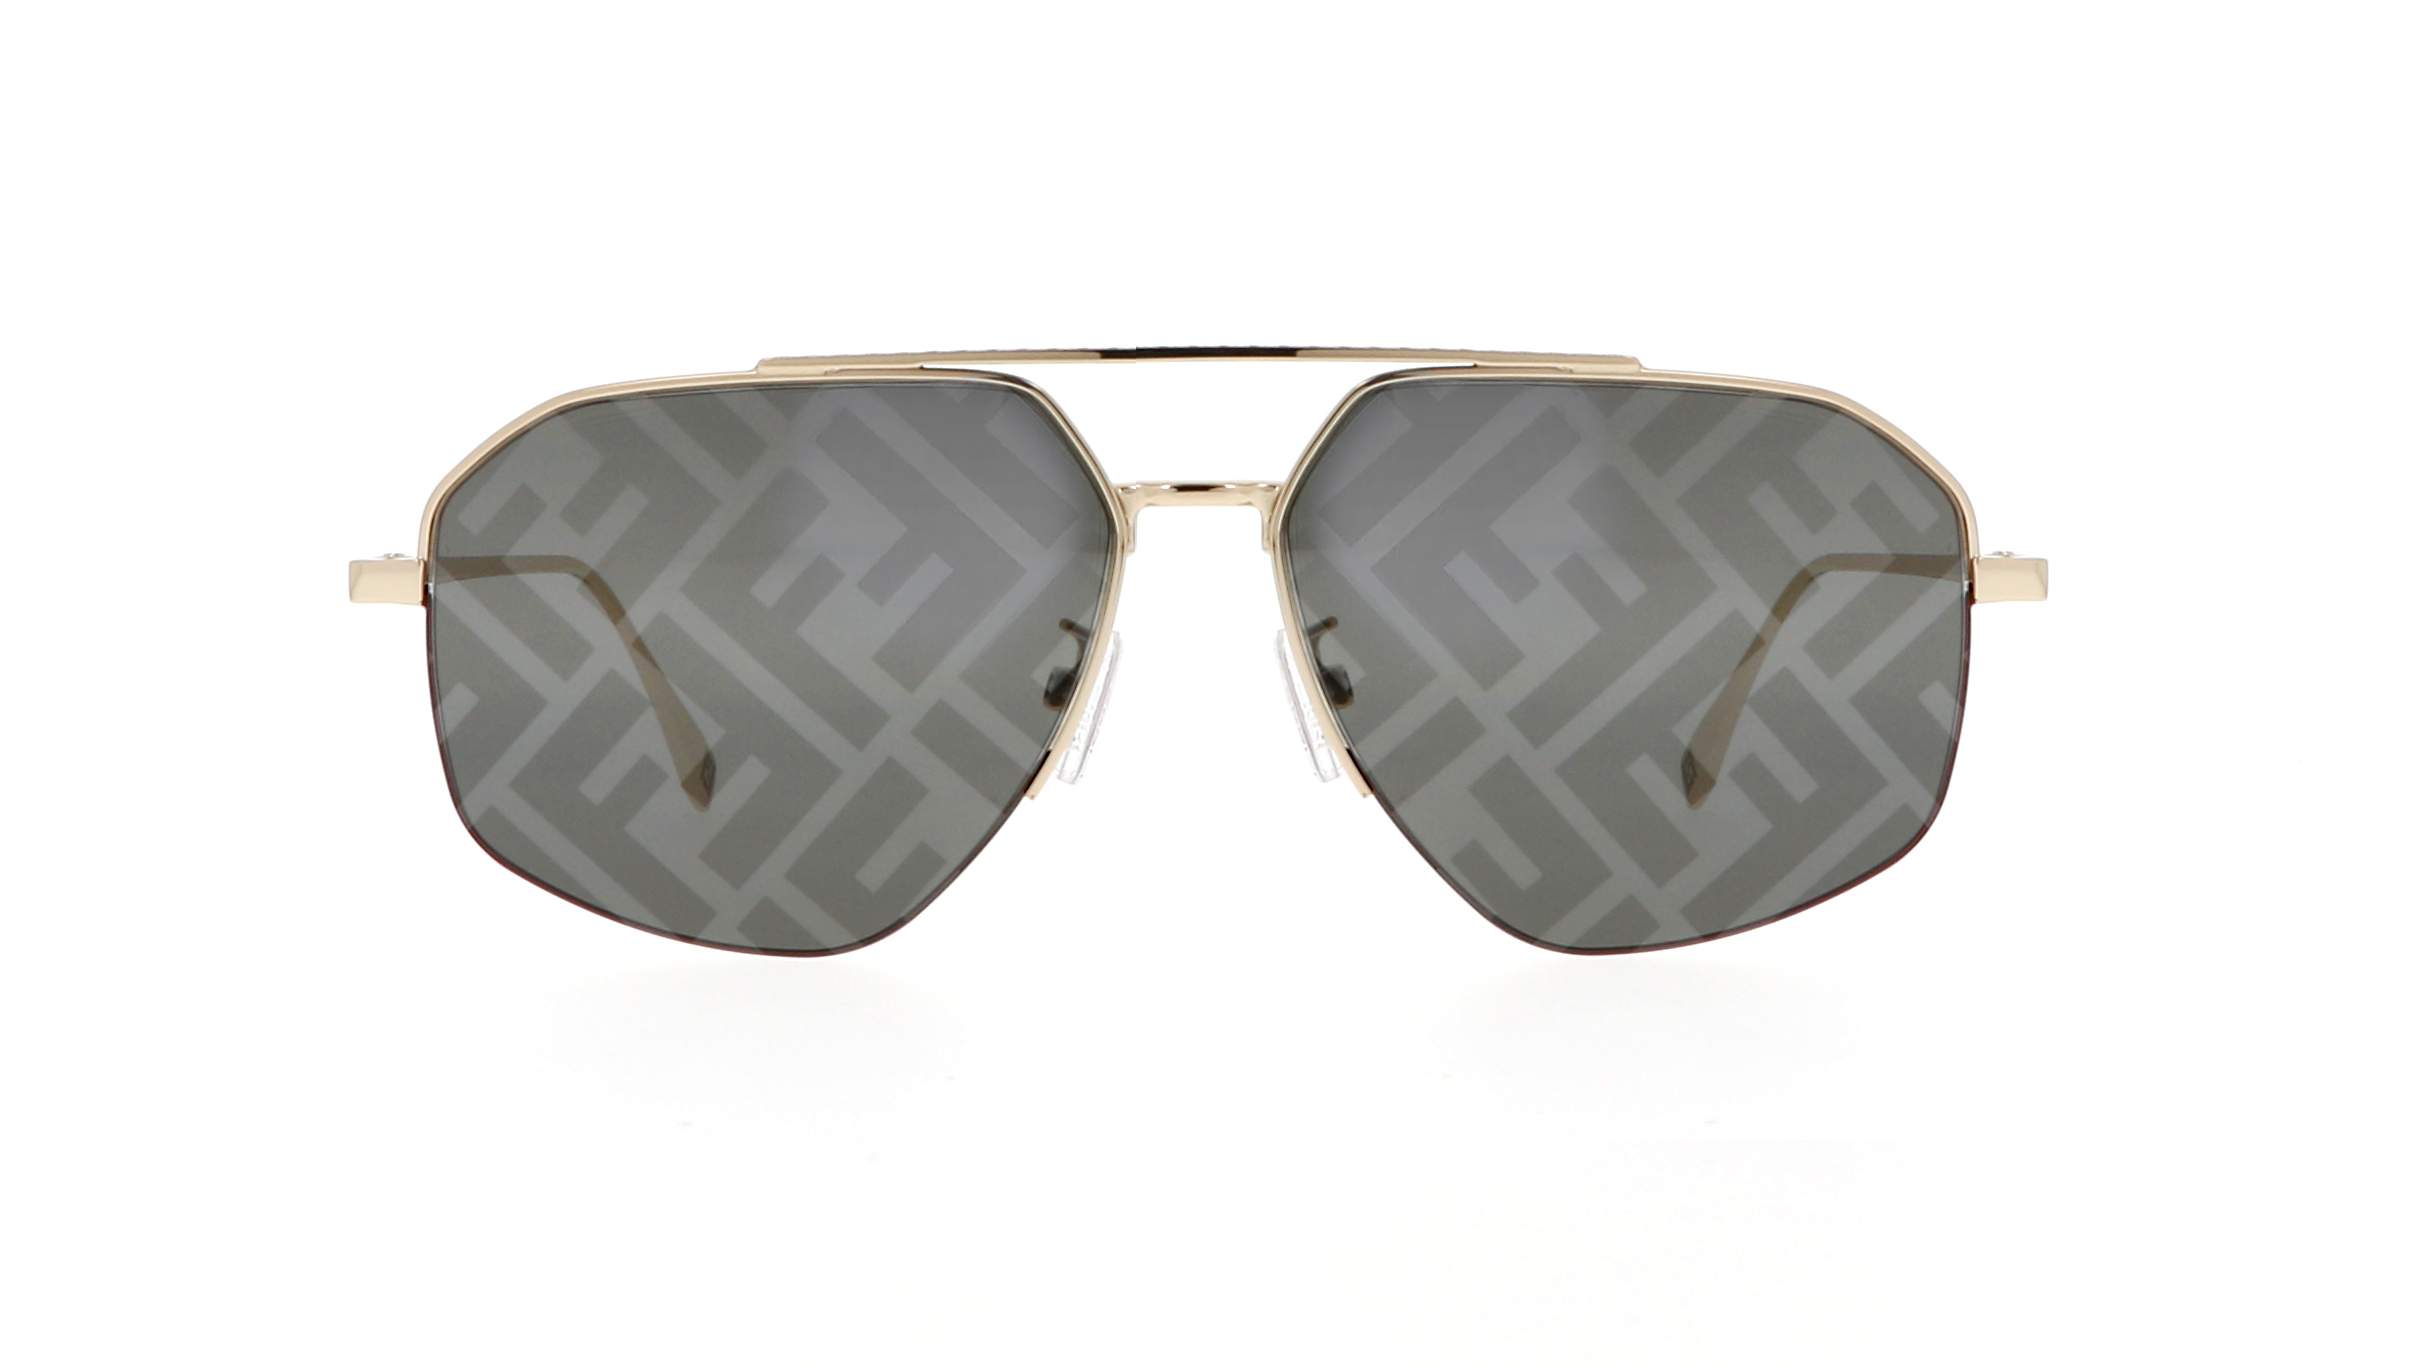 Fendi Travel - Gold-colored sunglasses